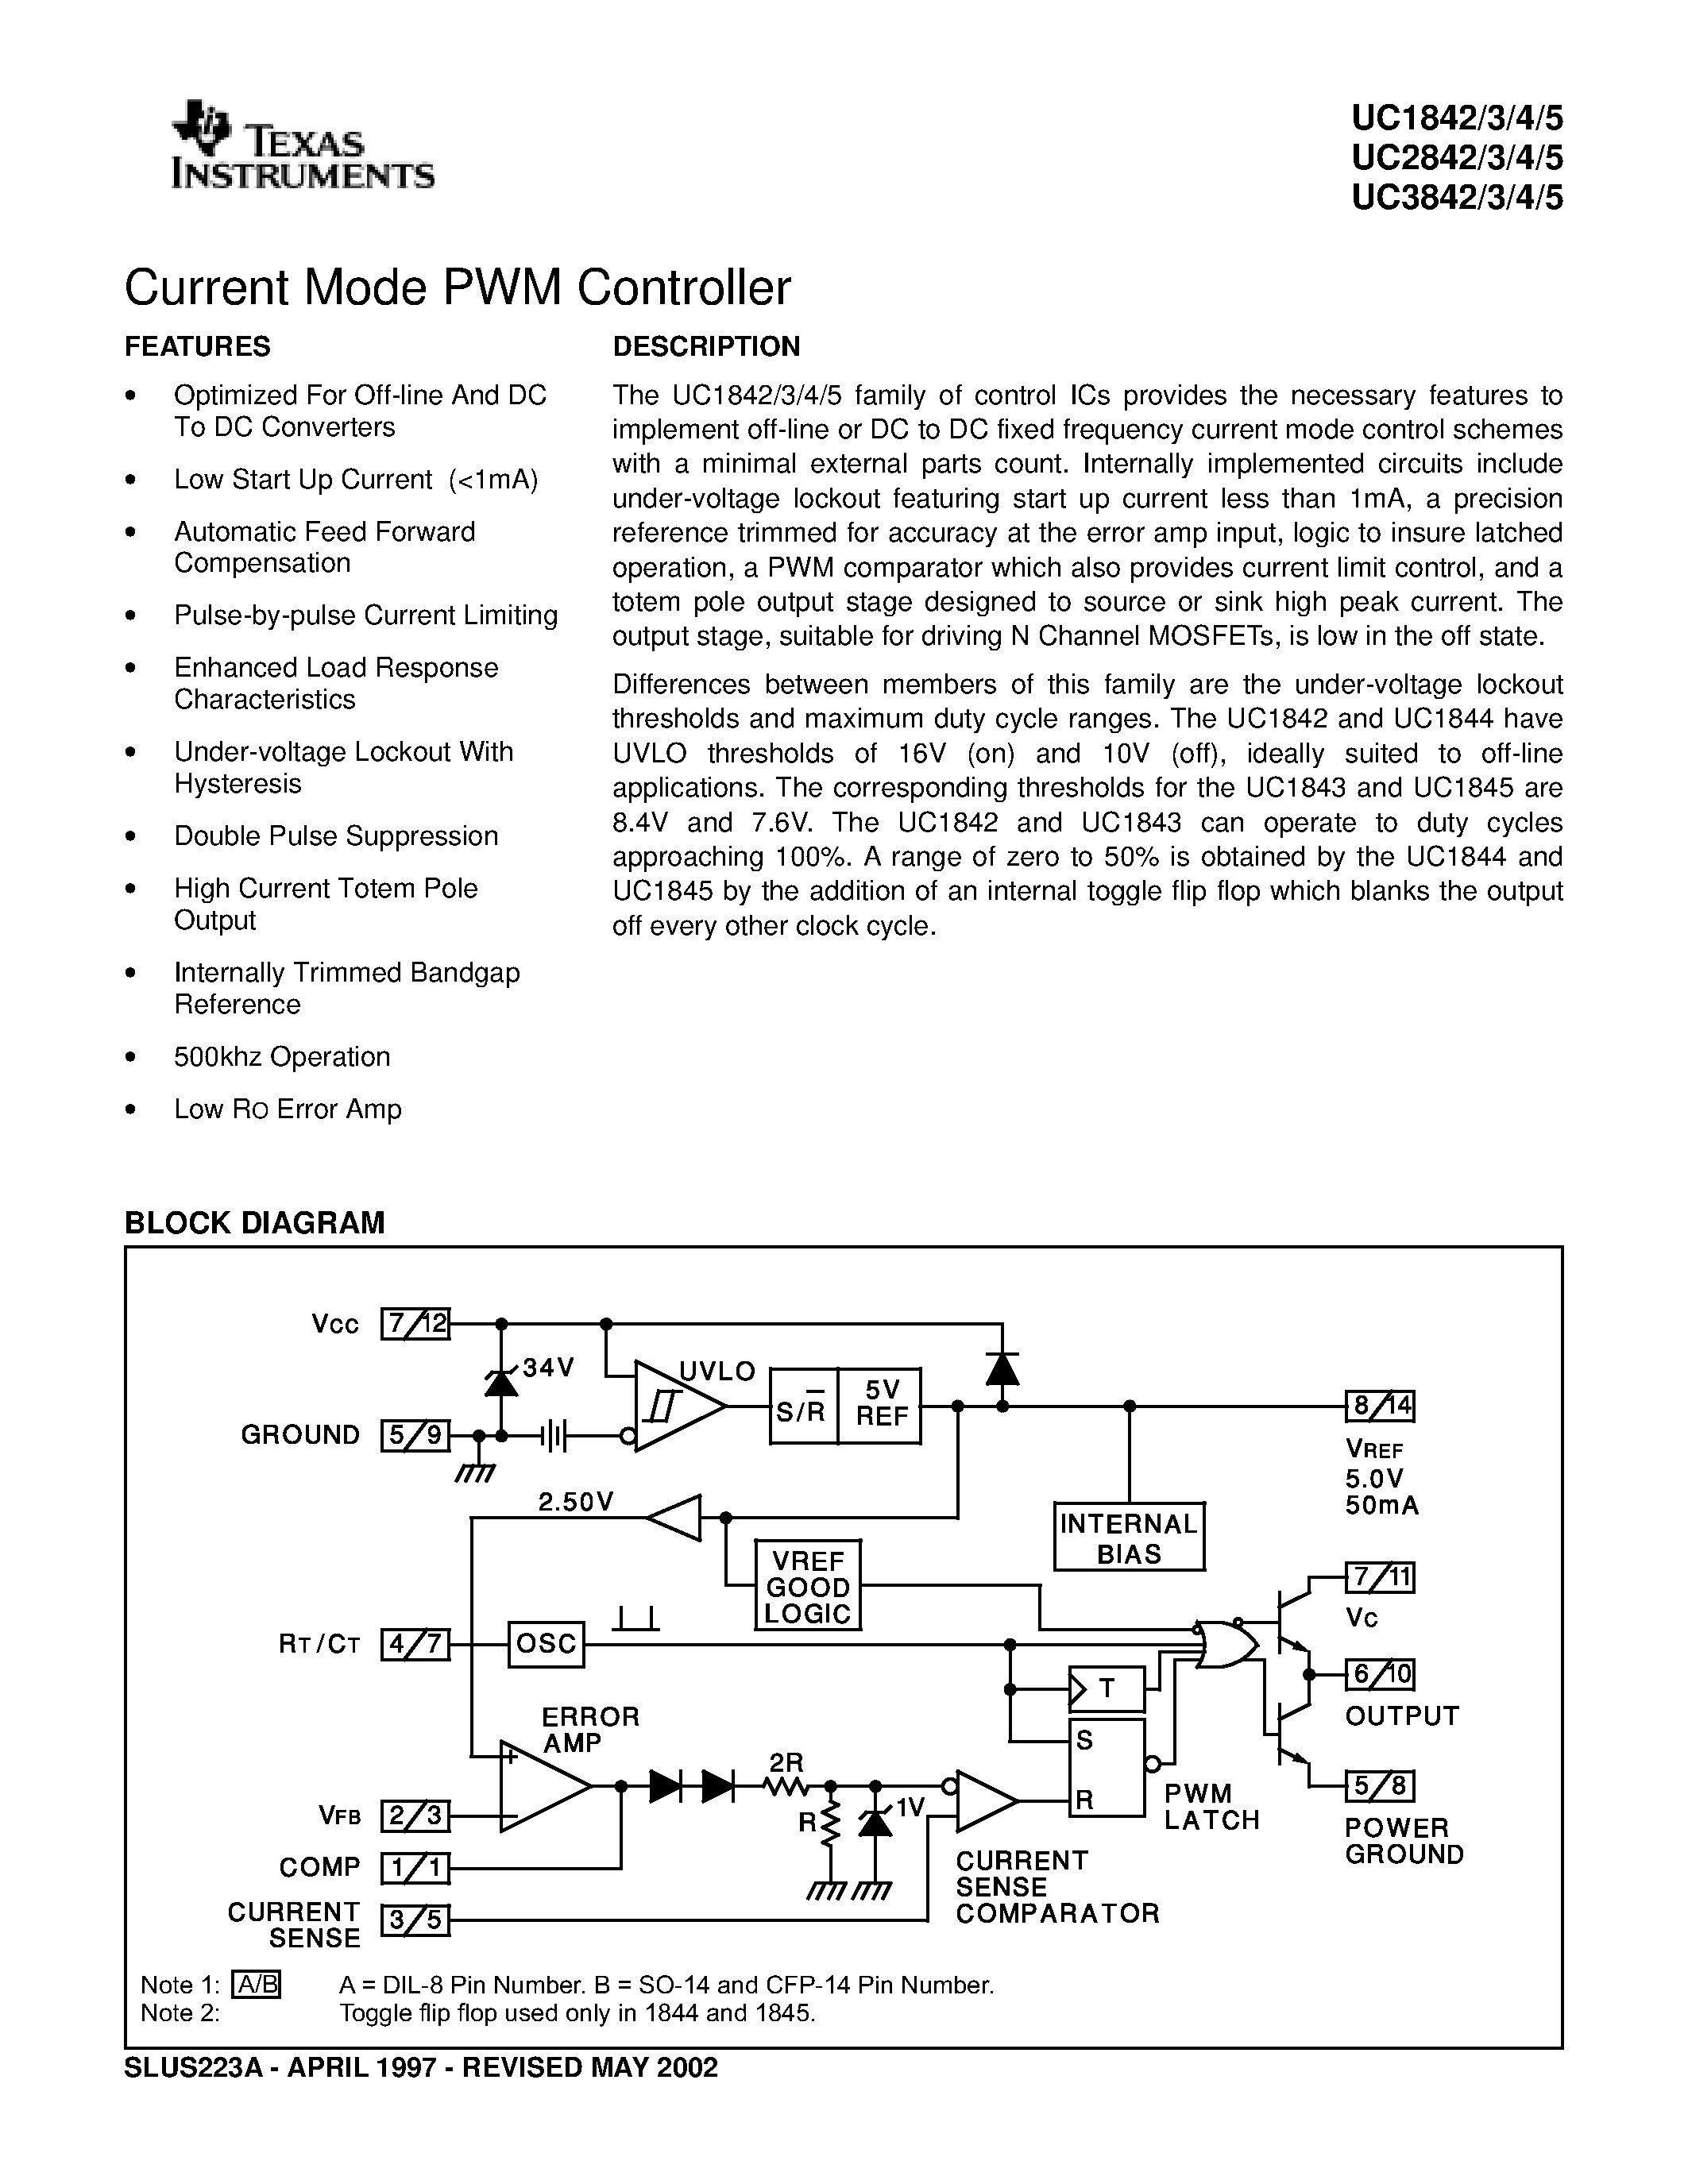 Даташит UC2845 - Current Mode PWM Controller страница 1